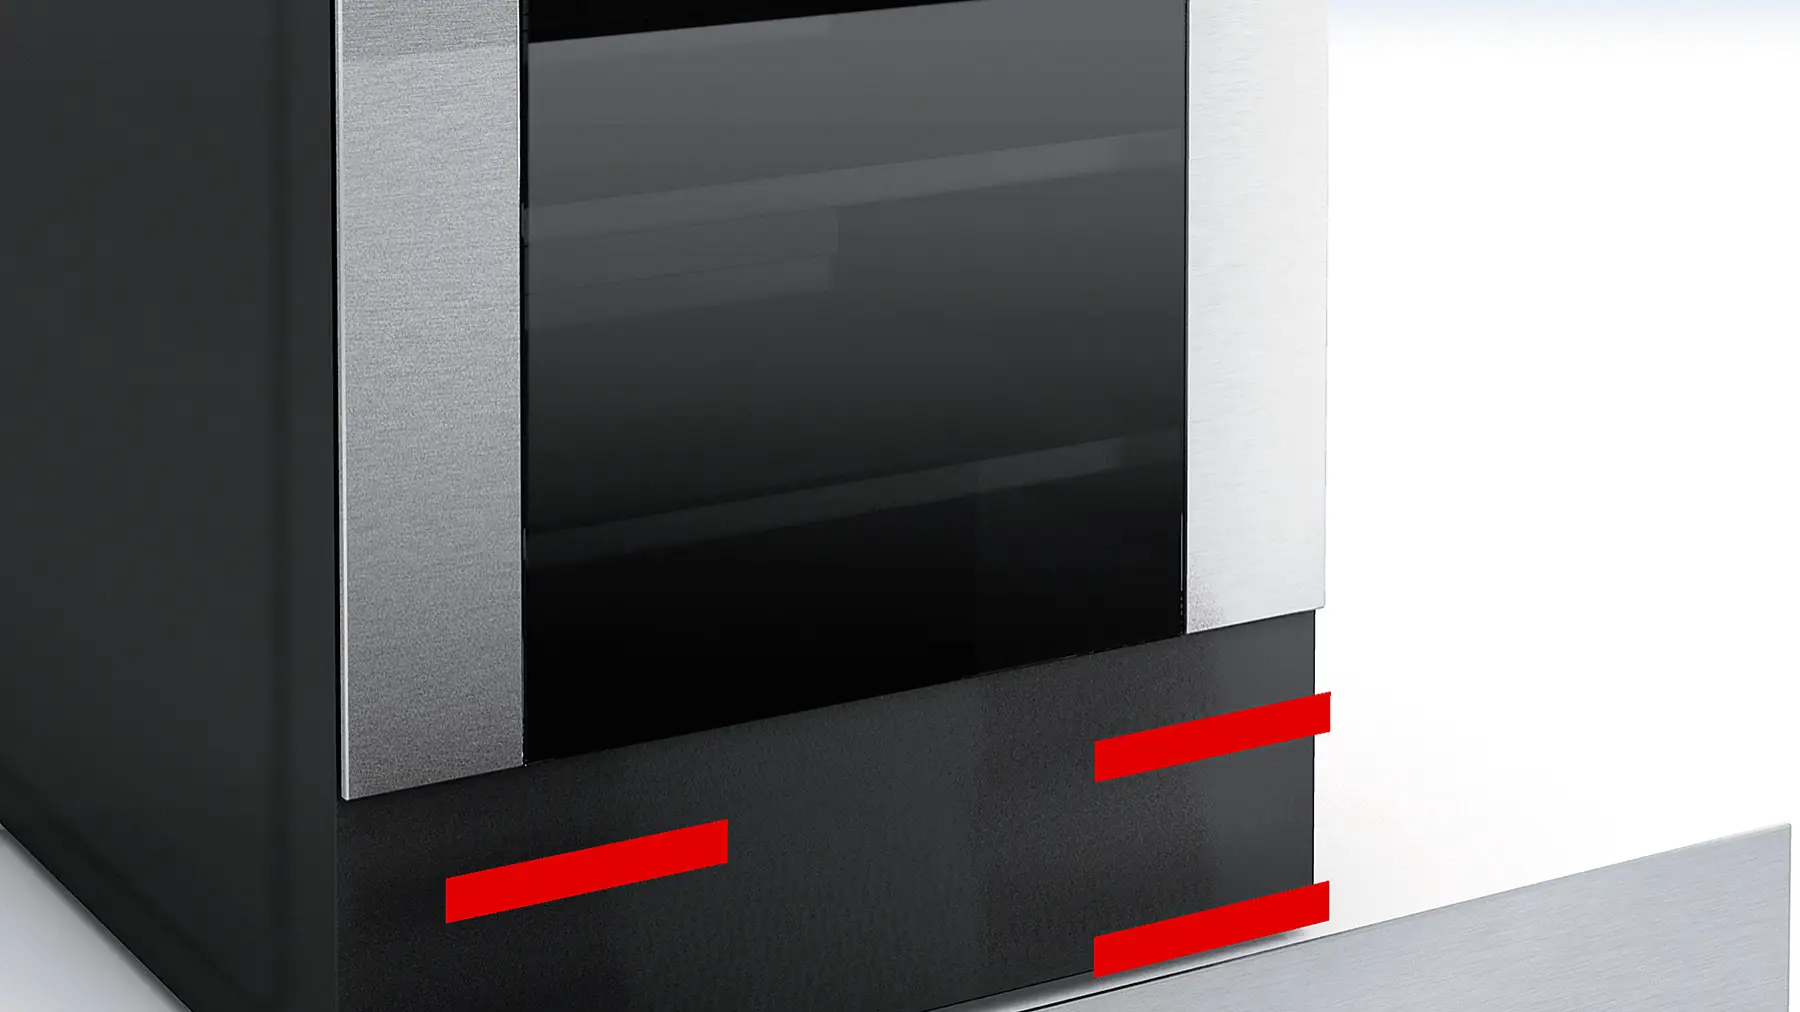 Dekorativní panely se připevňují ke vnějšku kovového pláště spotřebiče pomocí oboustranné pásky.